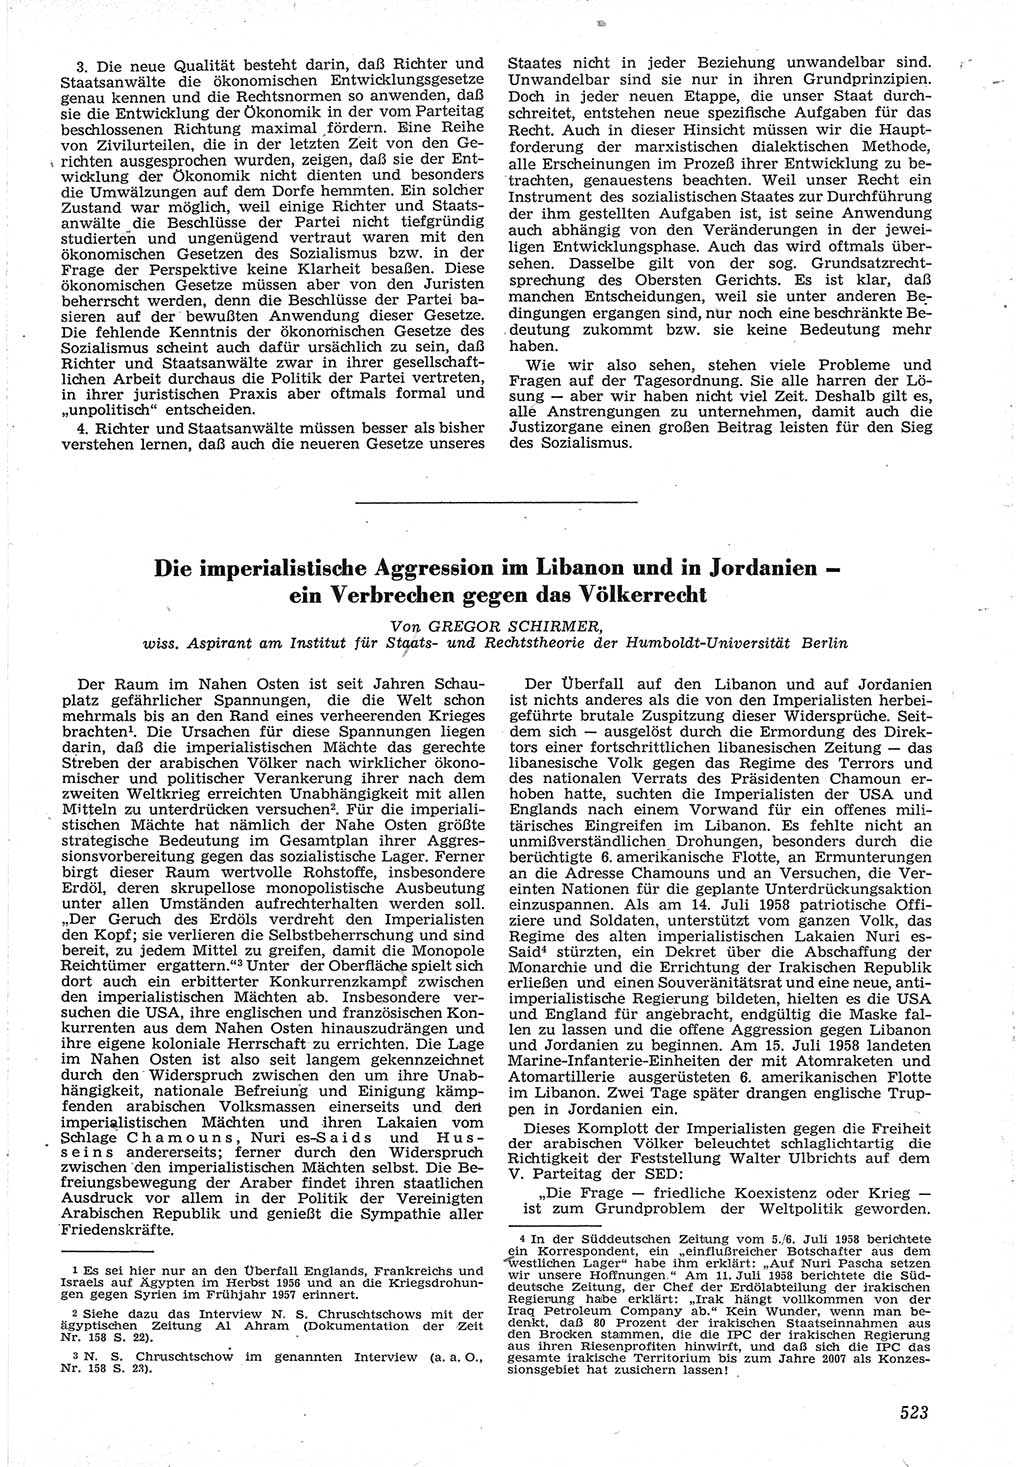 Neue Justiz (NJ), Zeitschrift für Recht und Rechtswissenschaft [Deutsche Demokratische Republik (DDR)], 12. Jahrgang 1958, Seite 523 (NJ DDR 1958, S. 523)